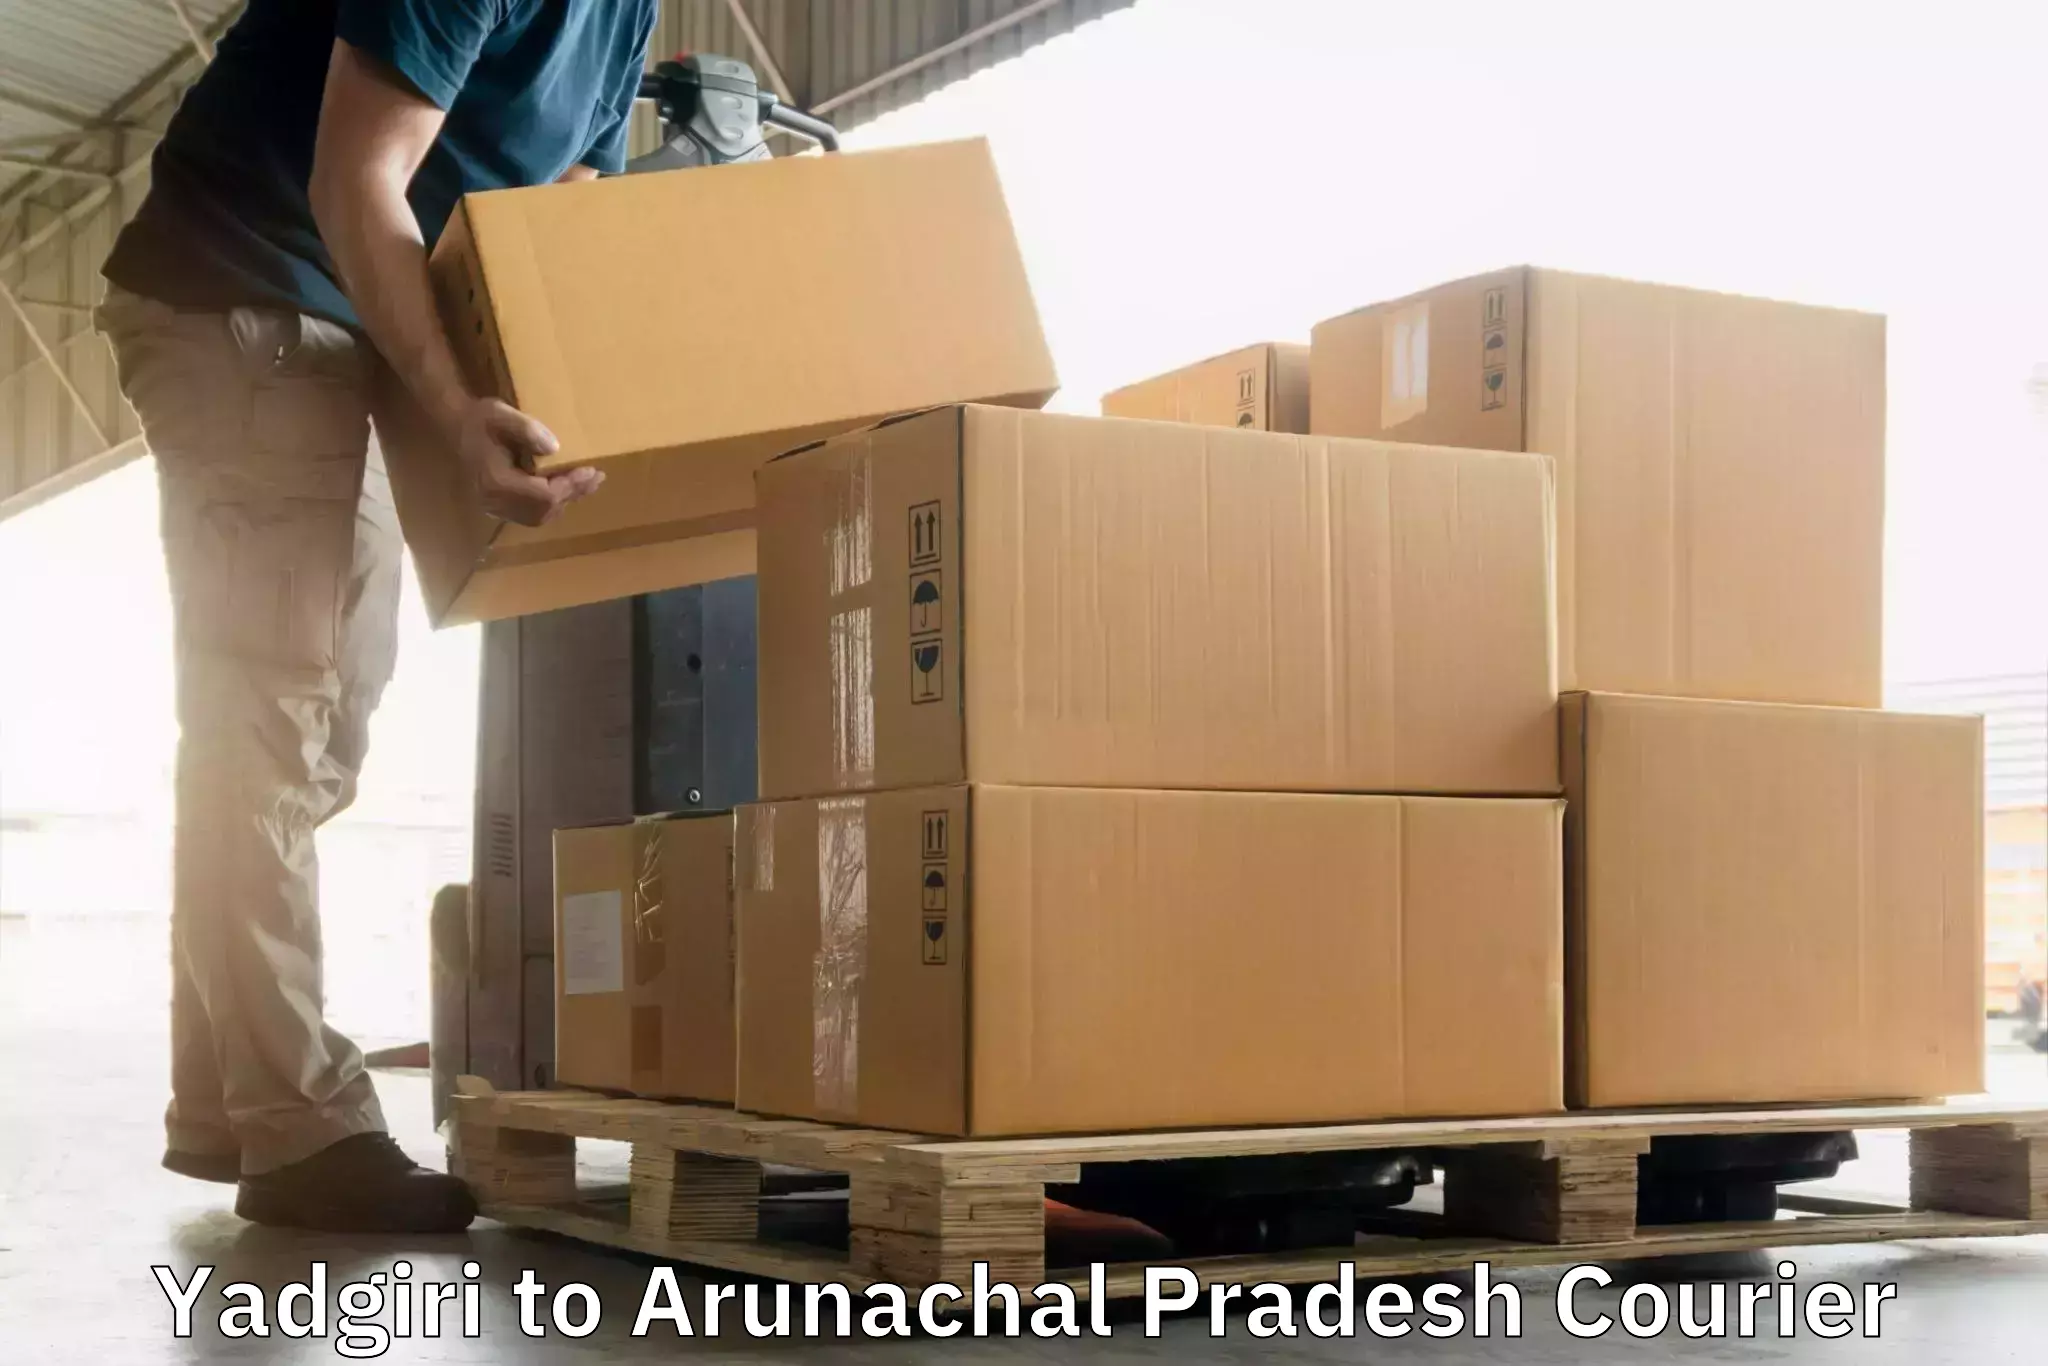 Modern delivery technologies Yadgiri to Aalo